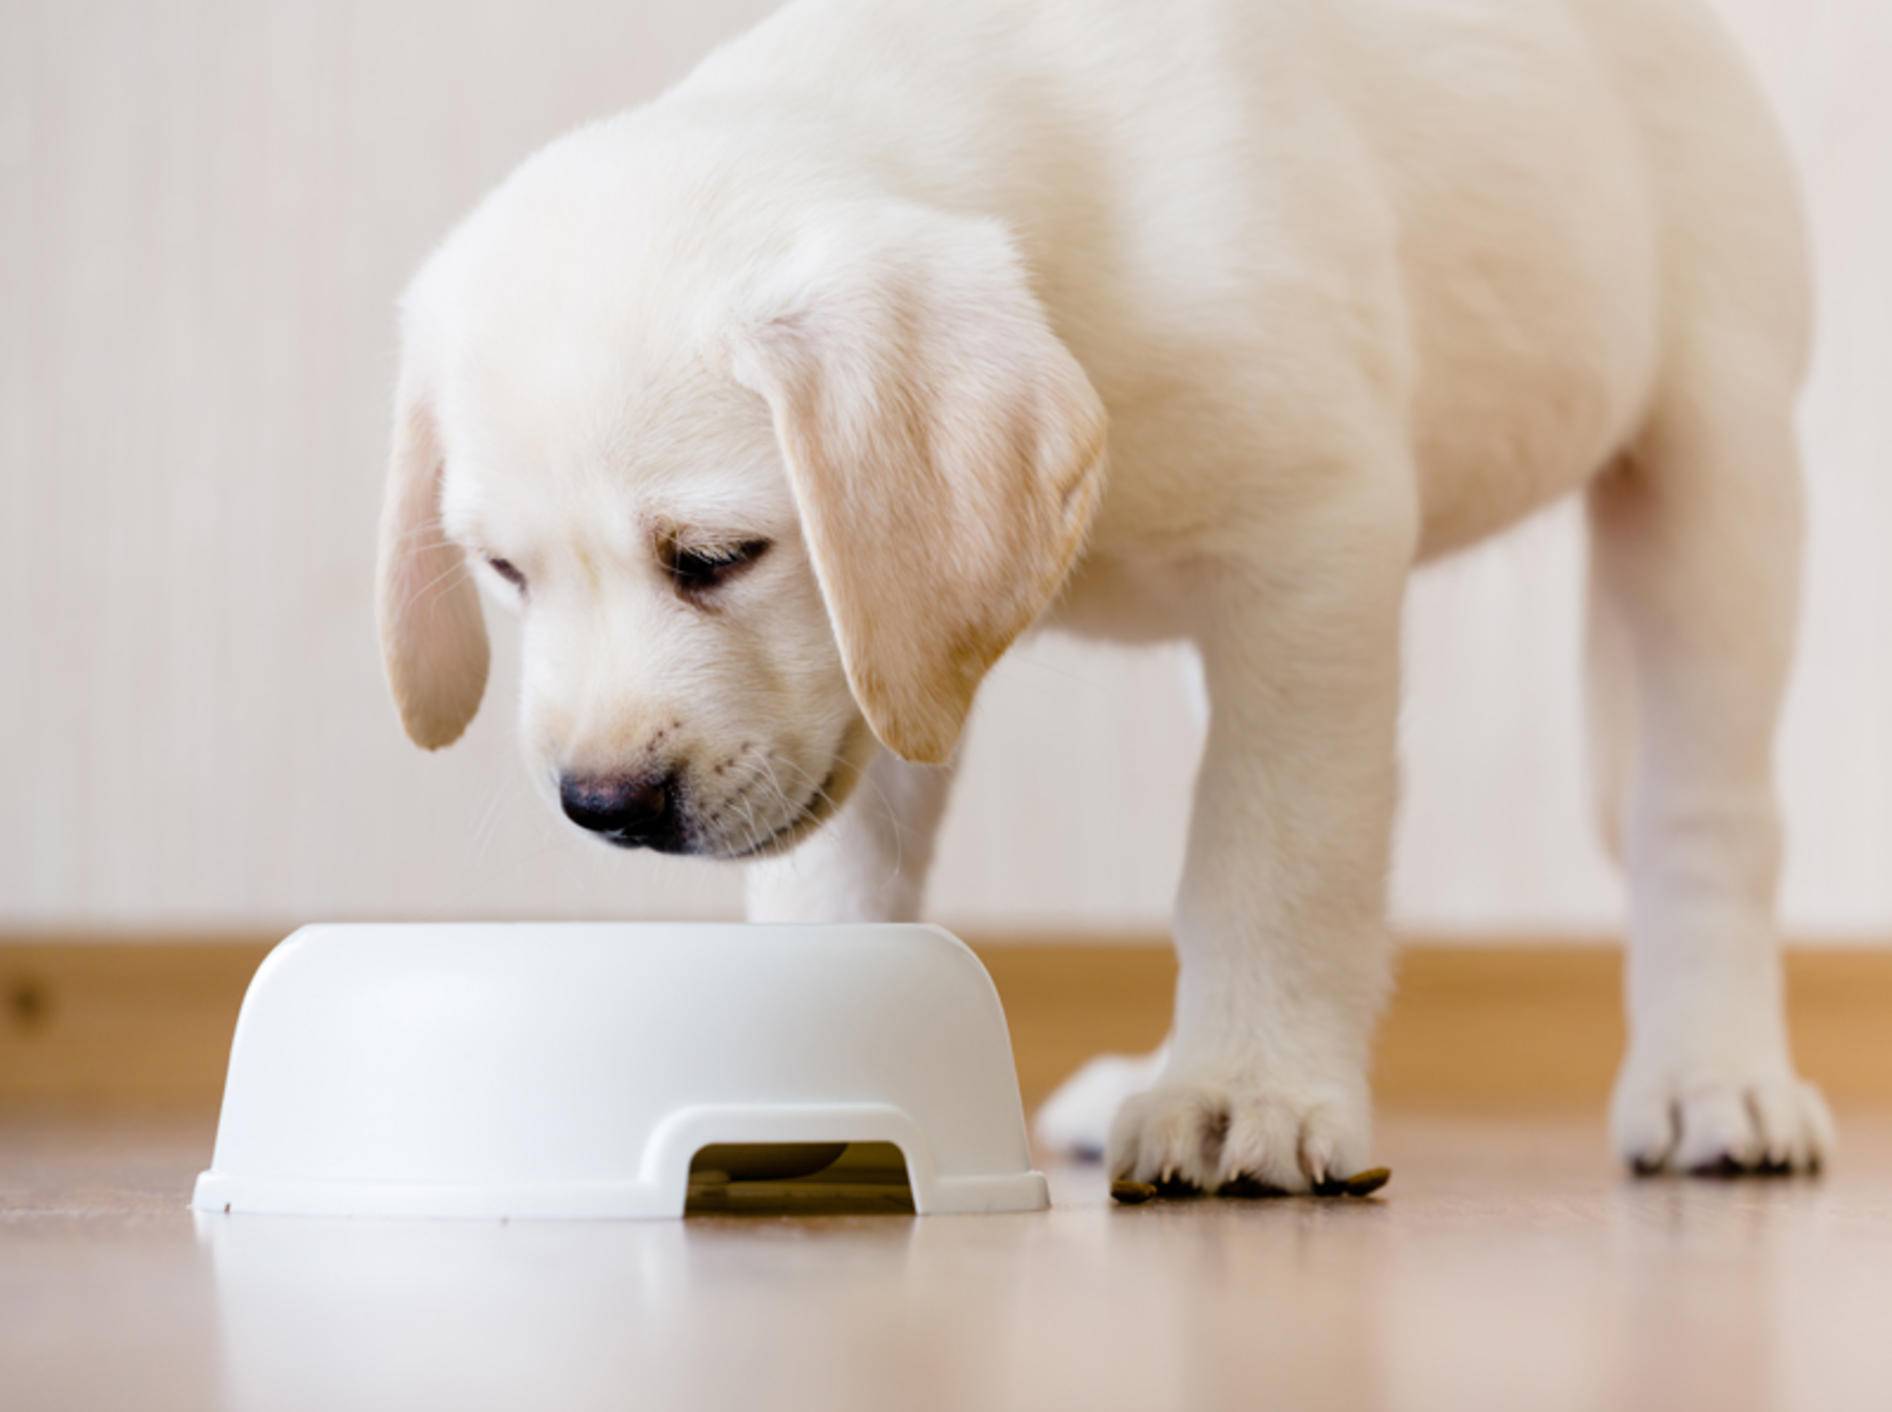 Labrador-Welpen brauchen ein anderes Futter als erwachsene Hunde – Shutterstock / Karramba Production